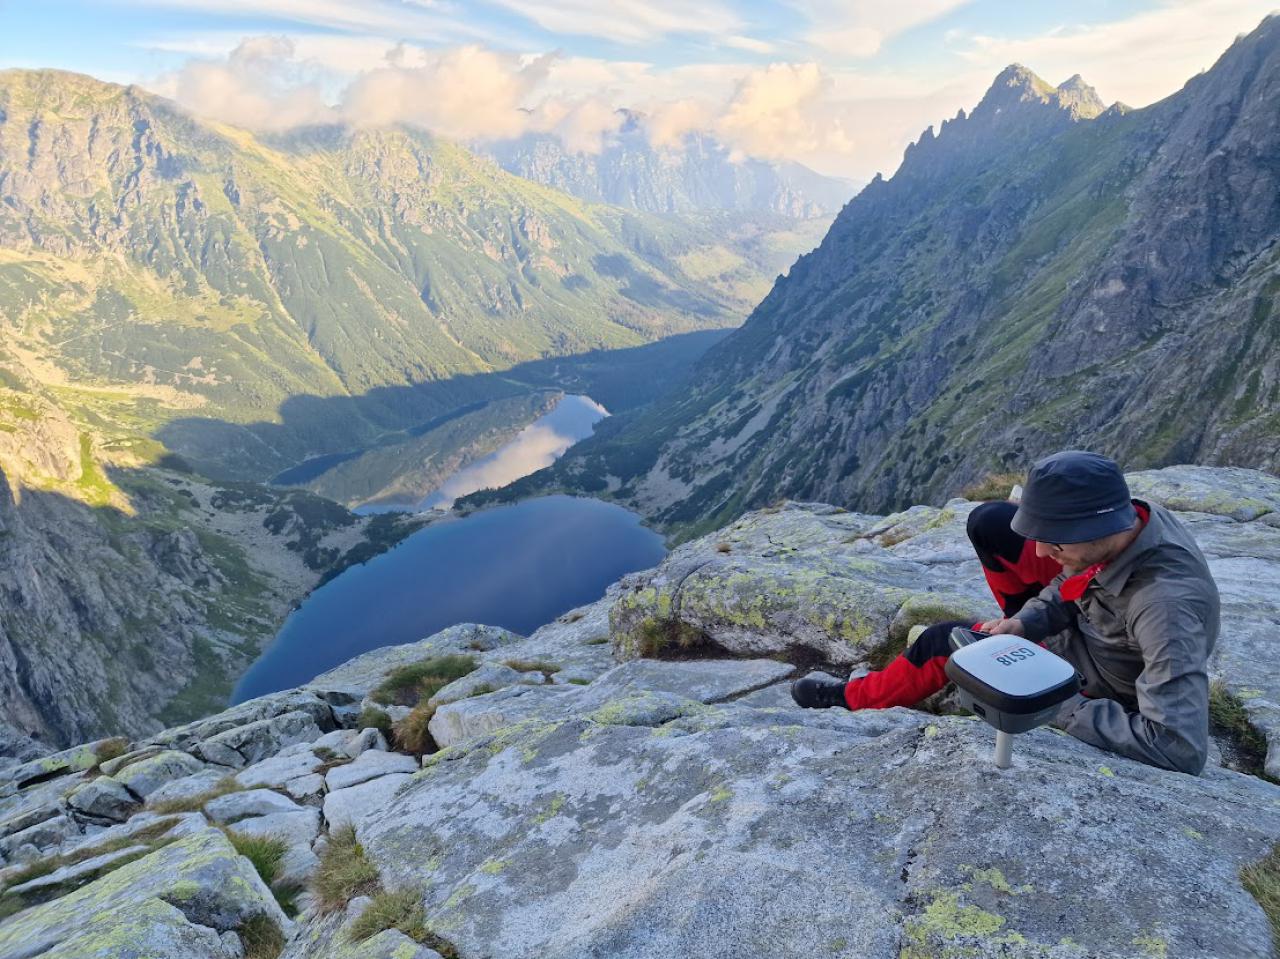 Wysokość szczytów w Tatrach do poprawki